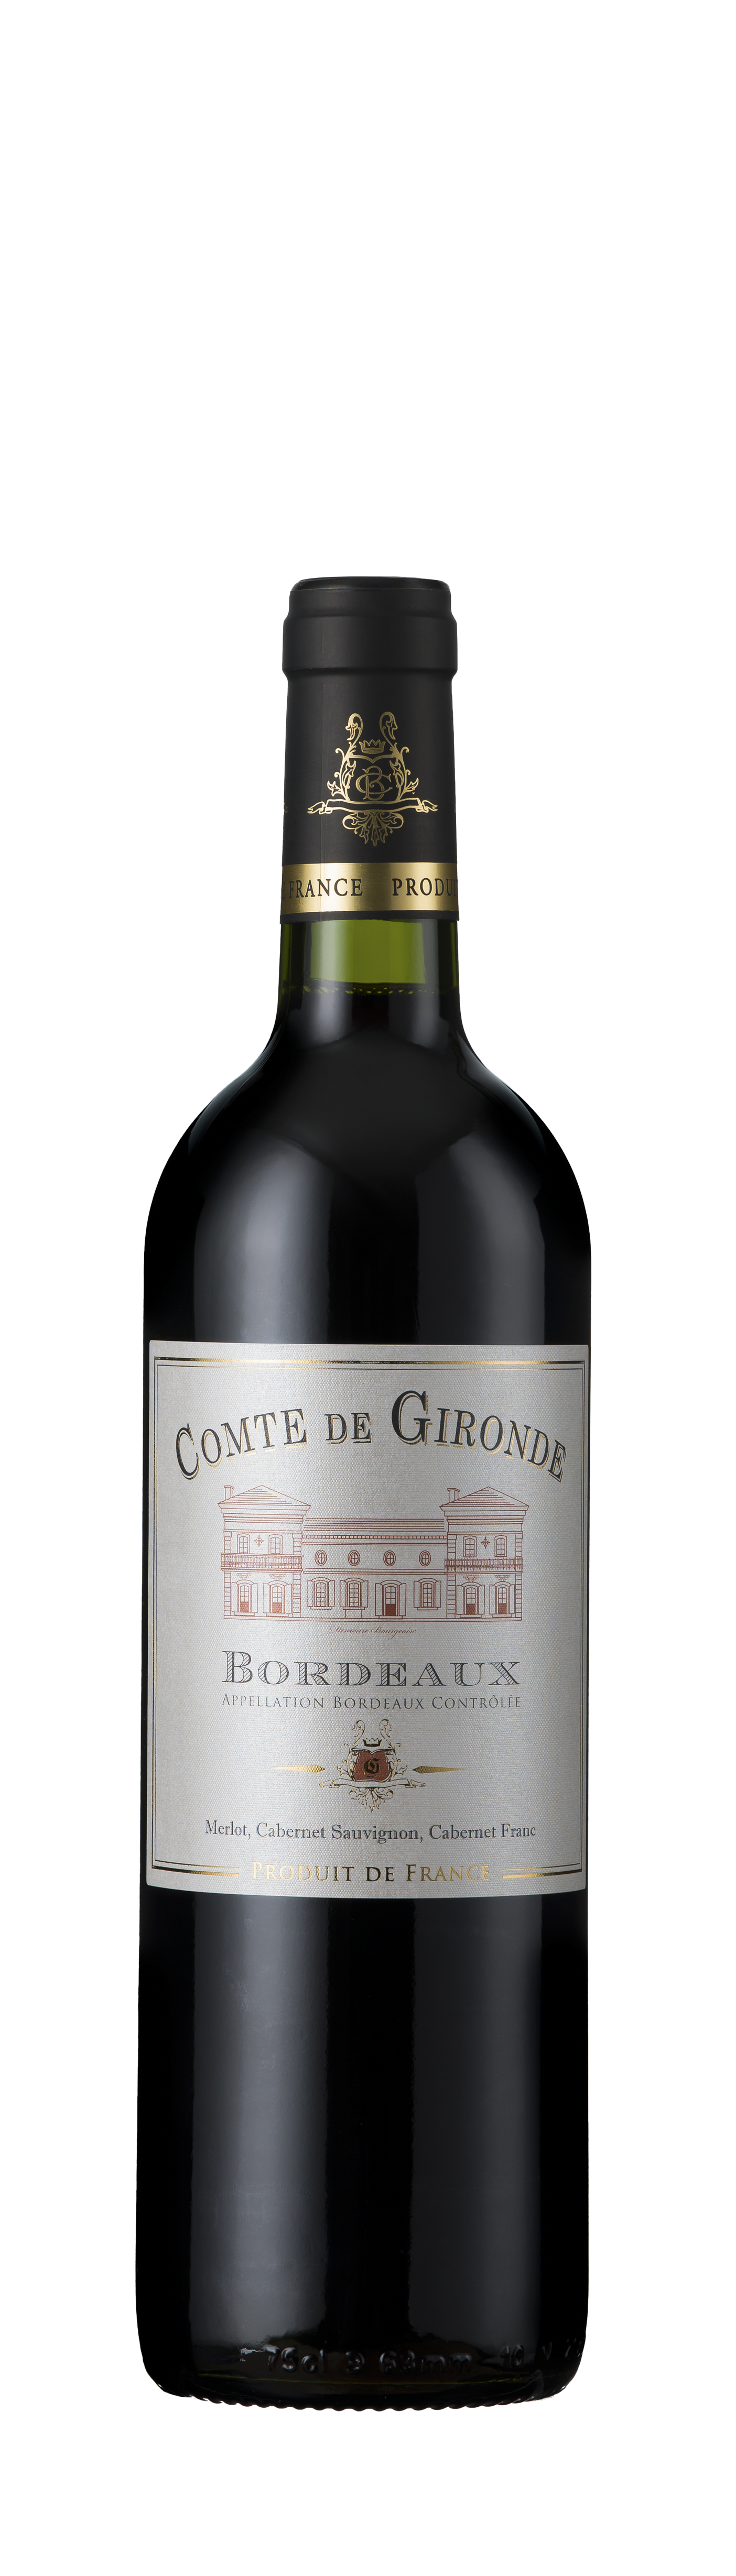 Bottle shot - Comte de Gironde, AOC Bordeaux, Bordeaux, France